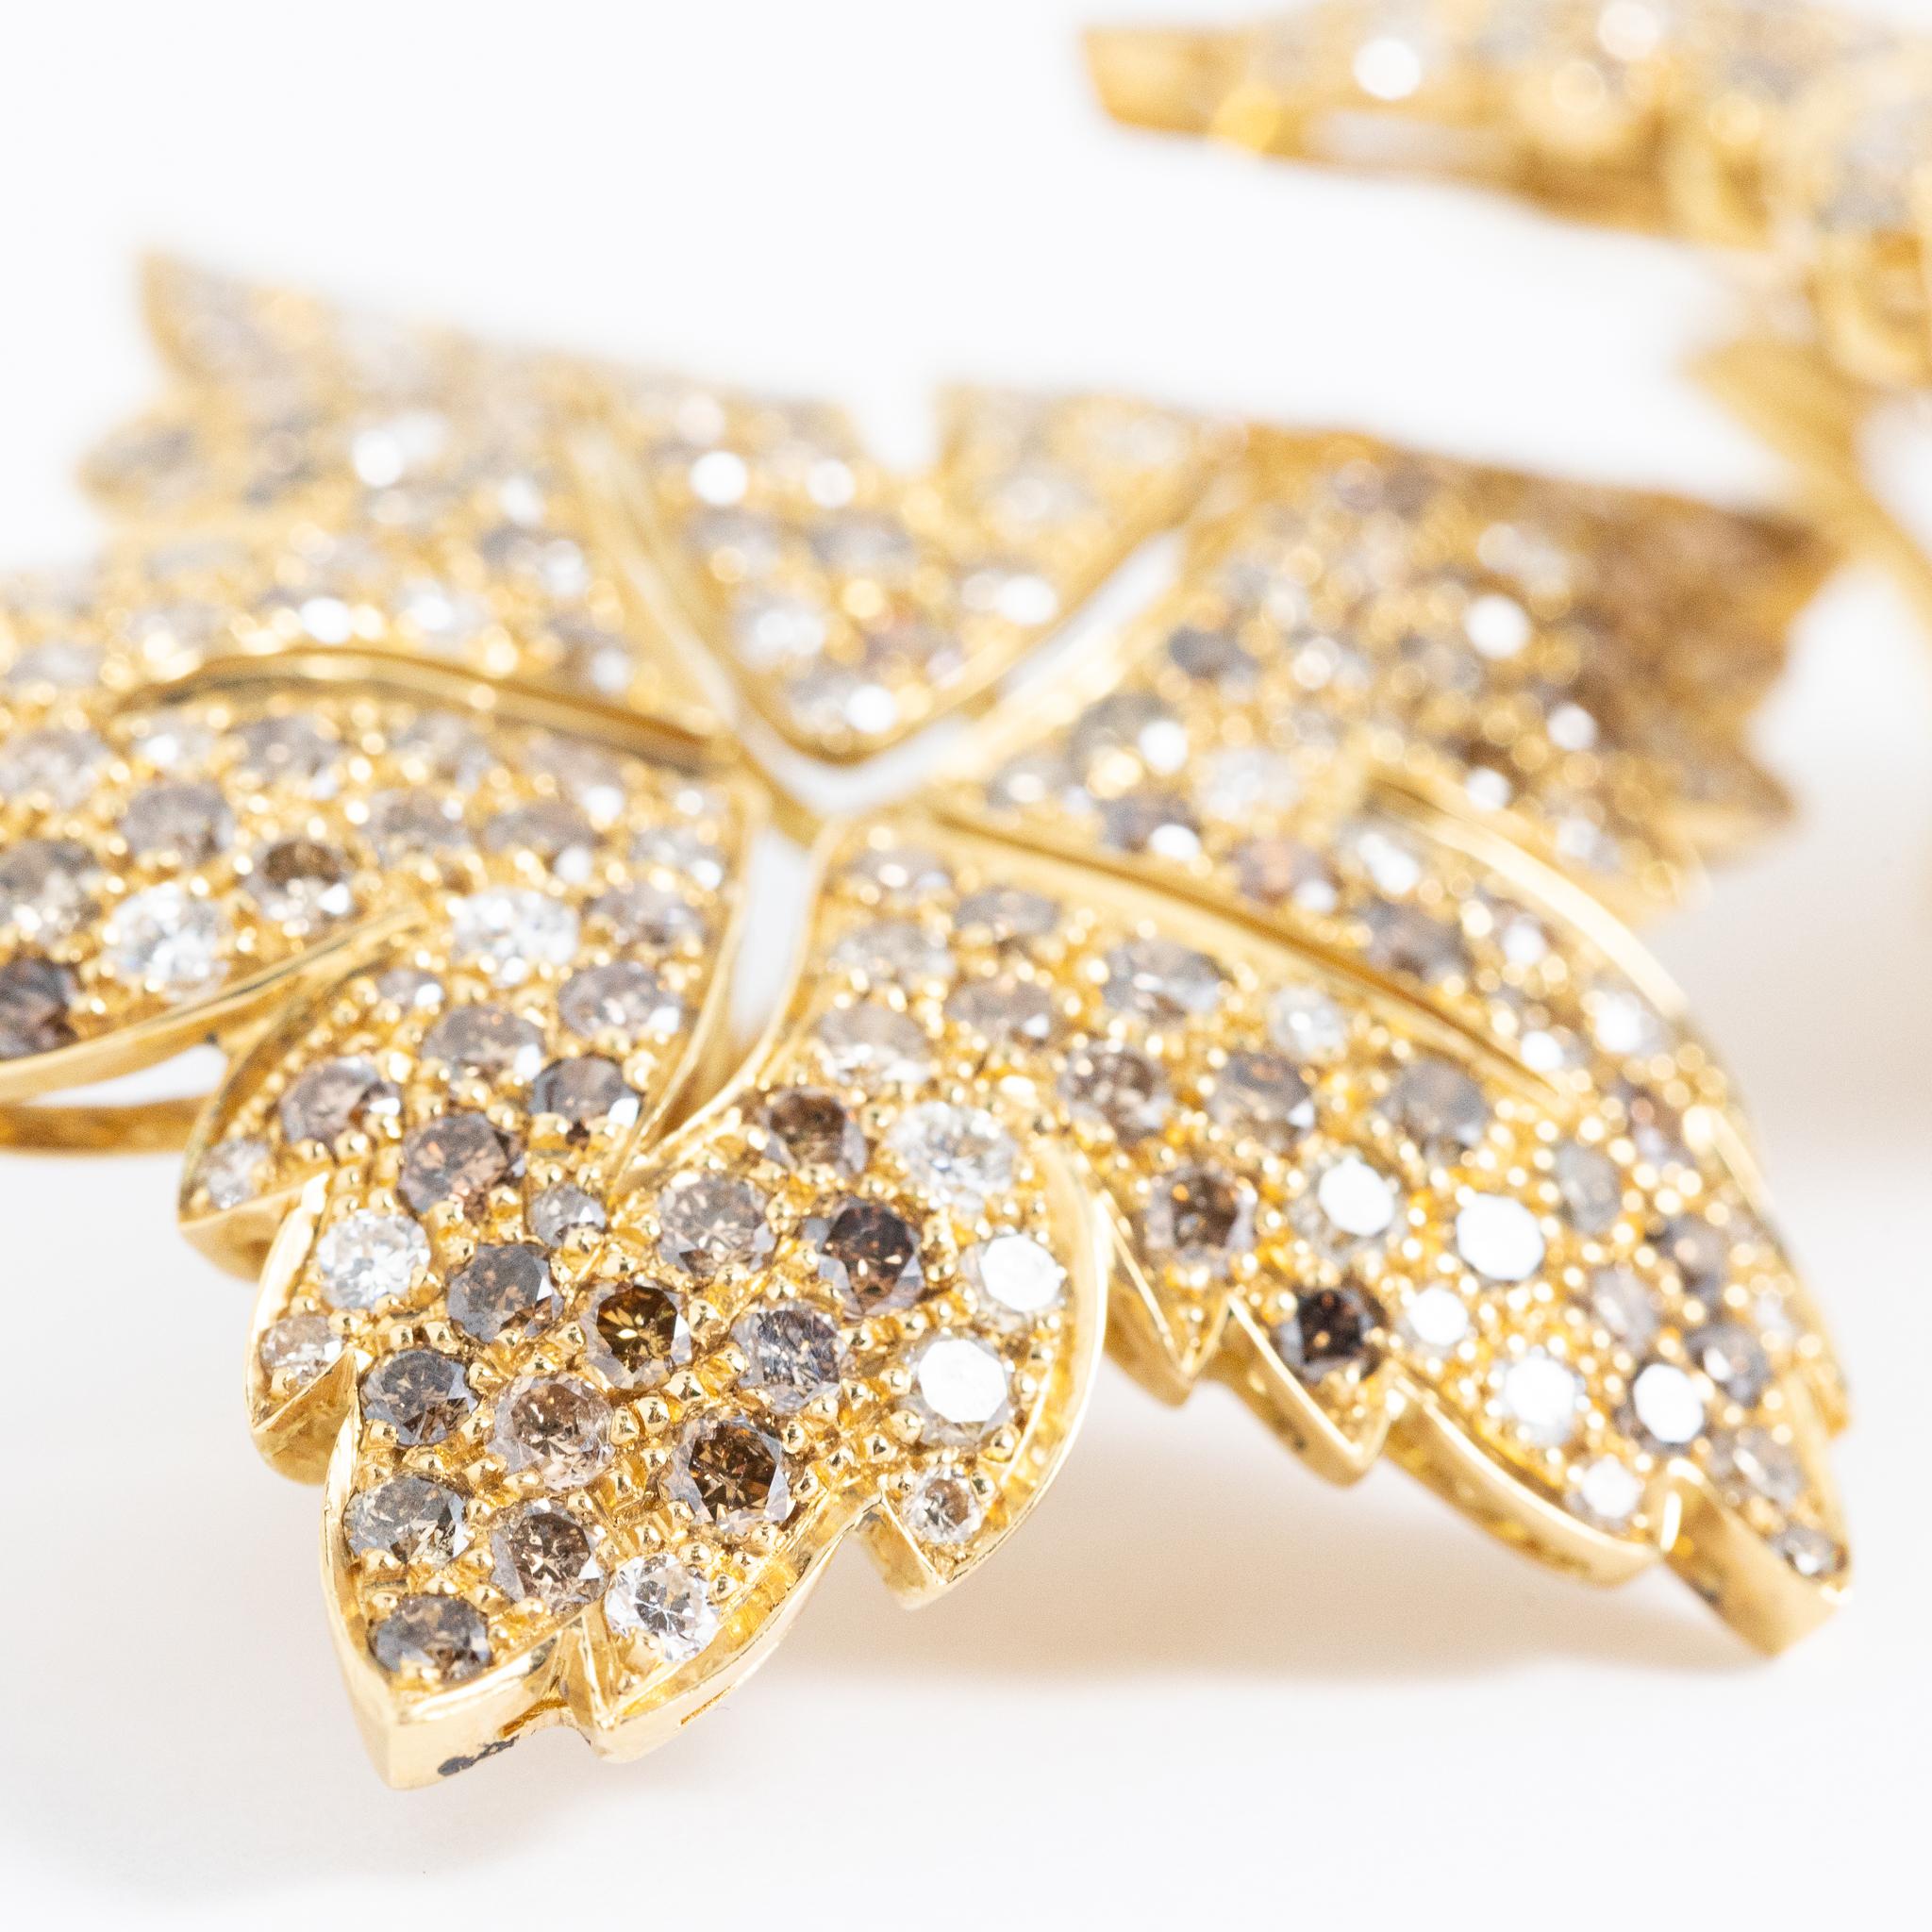 Boucles d'oreilles faites à la main en Italie en or jaune 18 carats avec des diamants blancs et bruns de taille brillant.
Cette pièce appartient à la collection Dolcevita de Fraleoni.
Les boucles d'oreilles sont conçues comme une feuille et